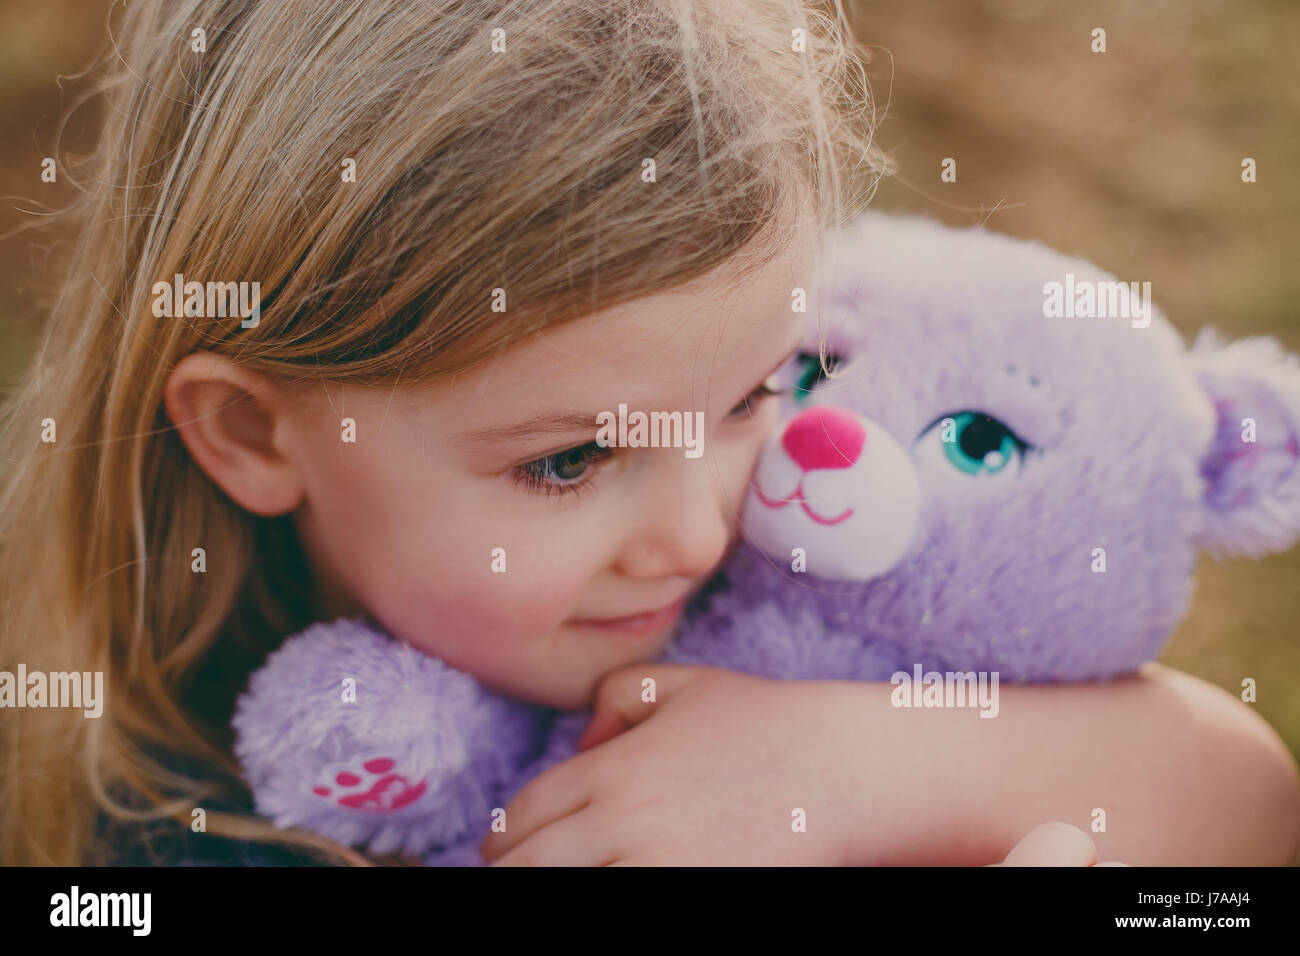 Girl cuddling a teddy Stock Photo